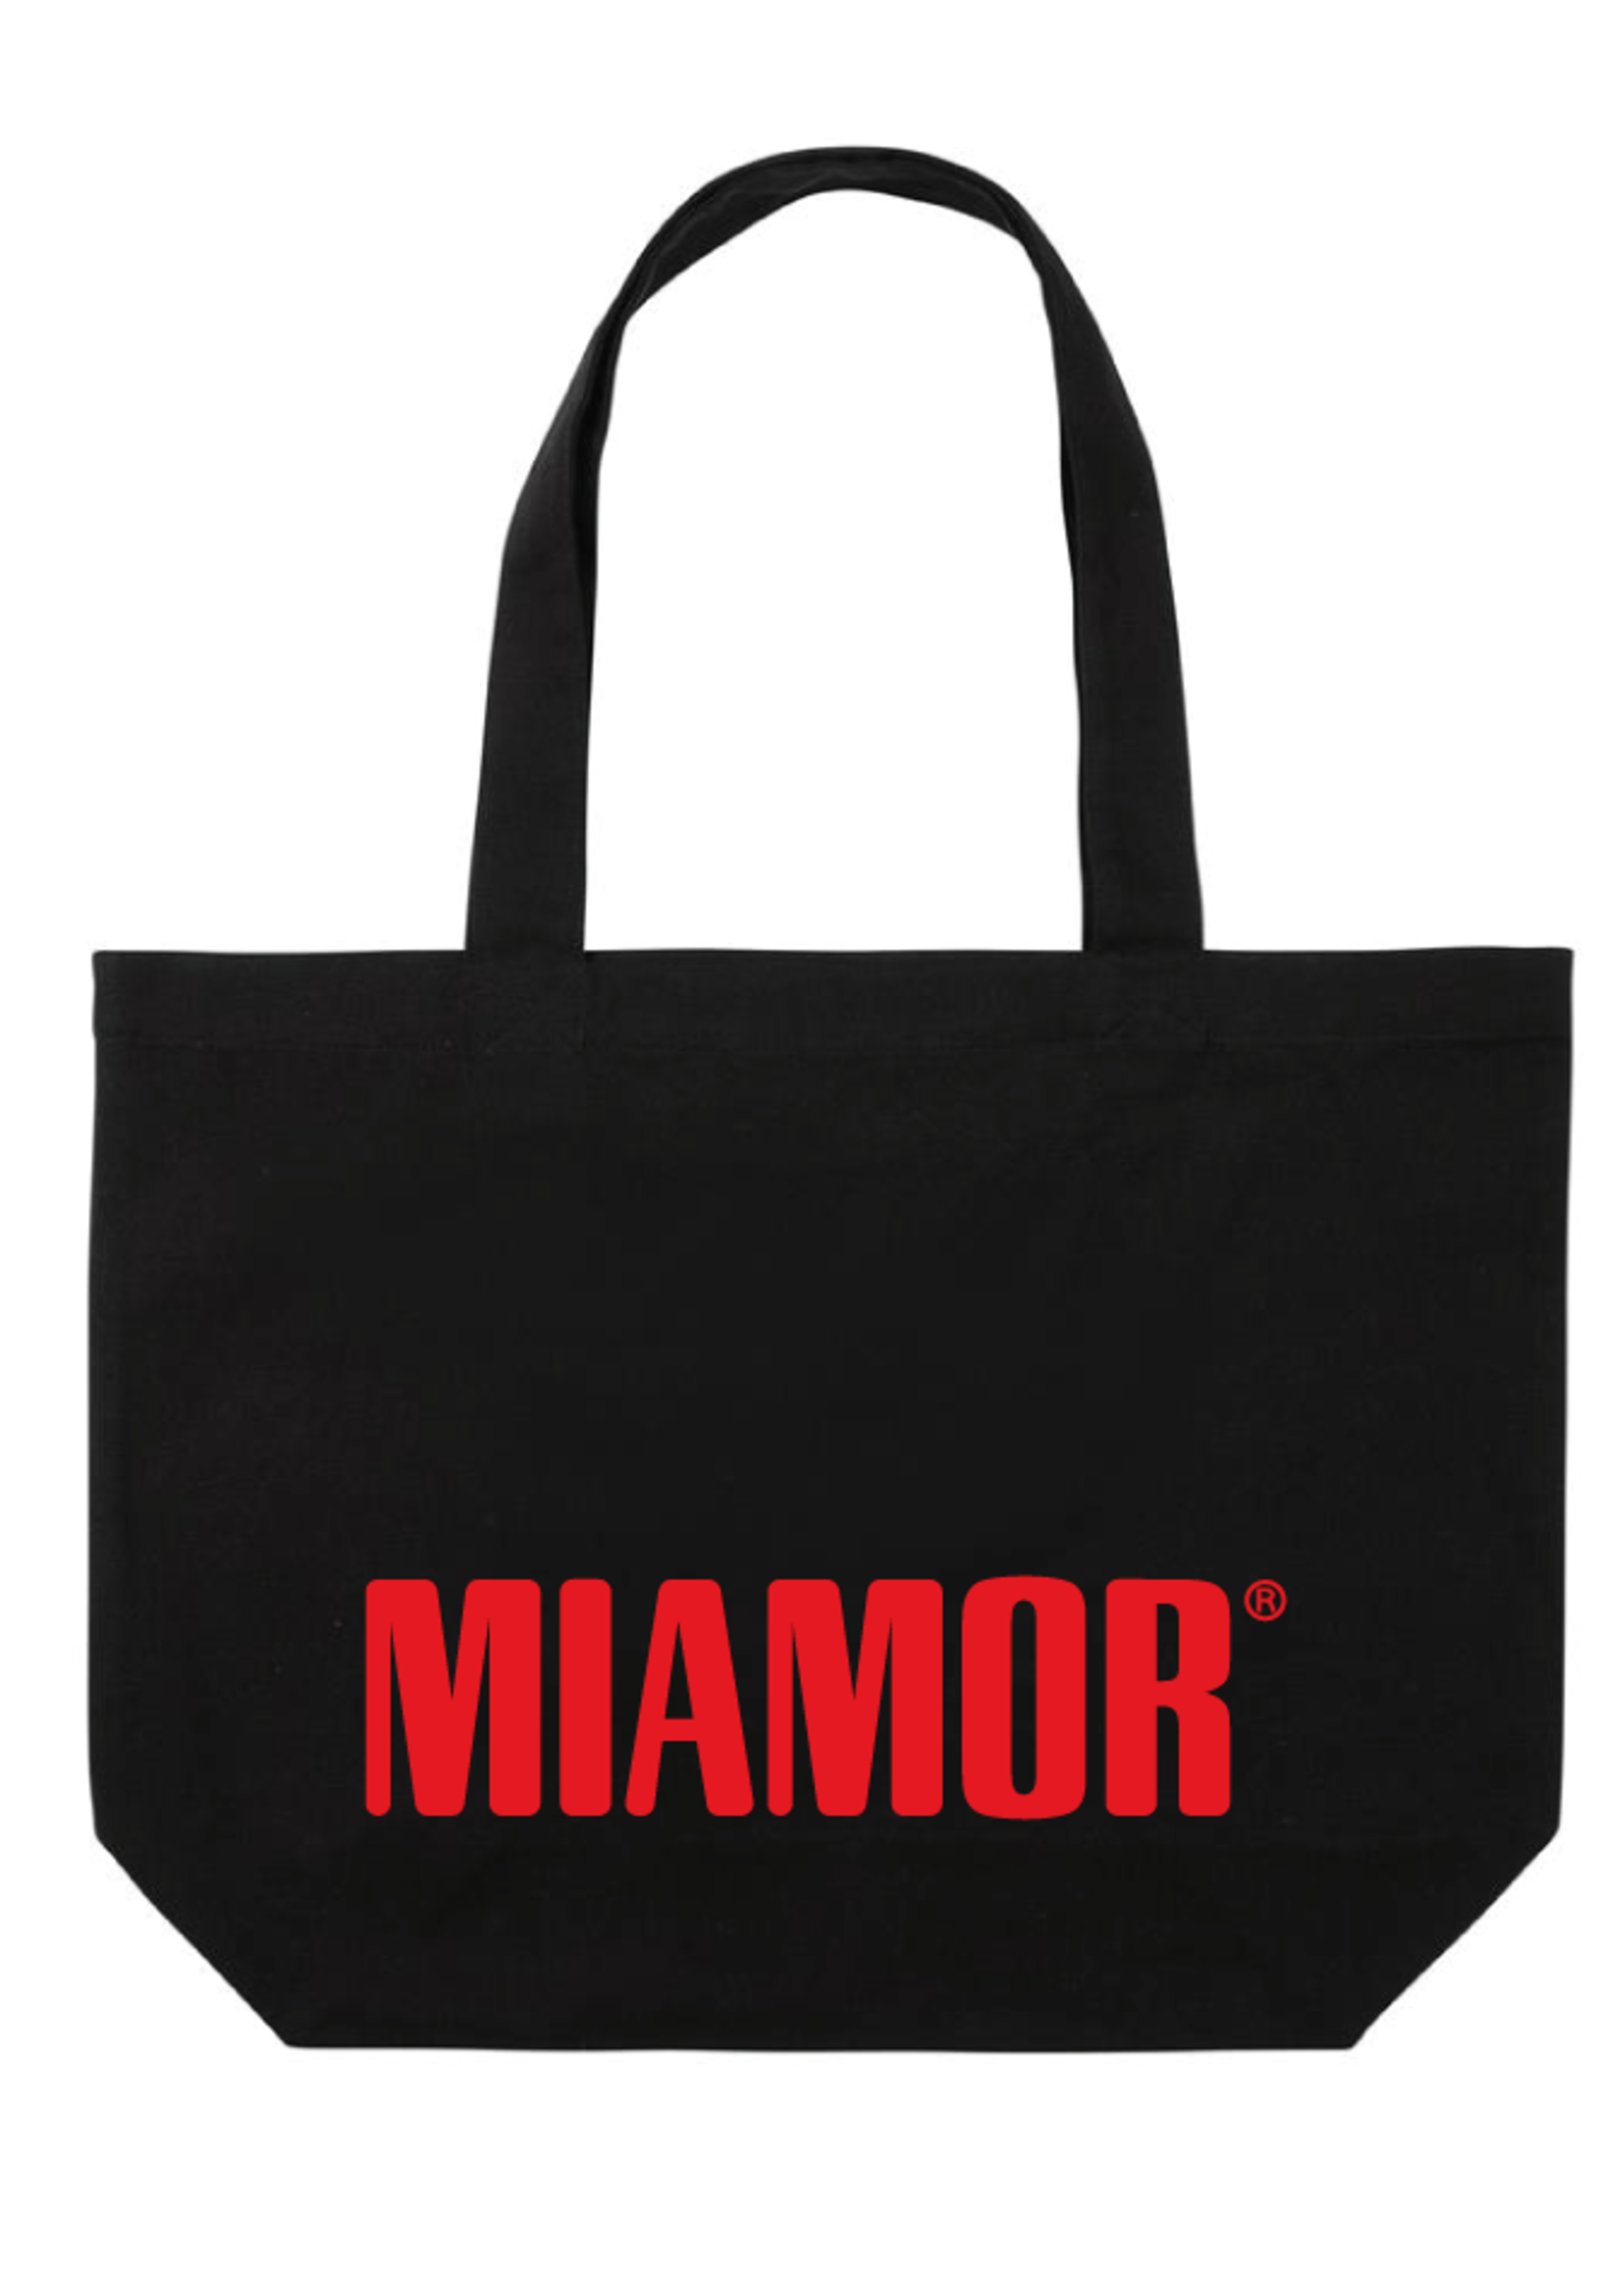 Miamor Tote bag - Black Red Logo